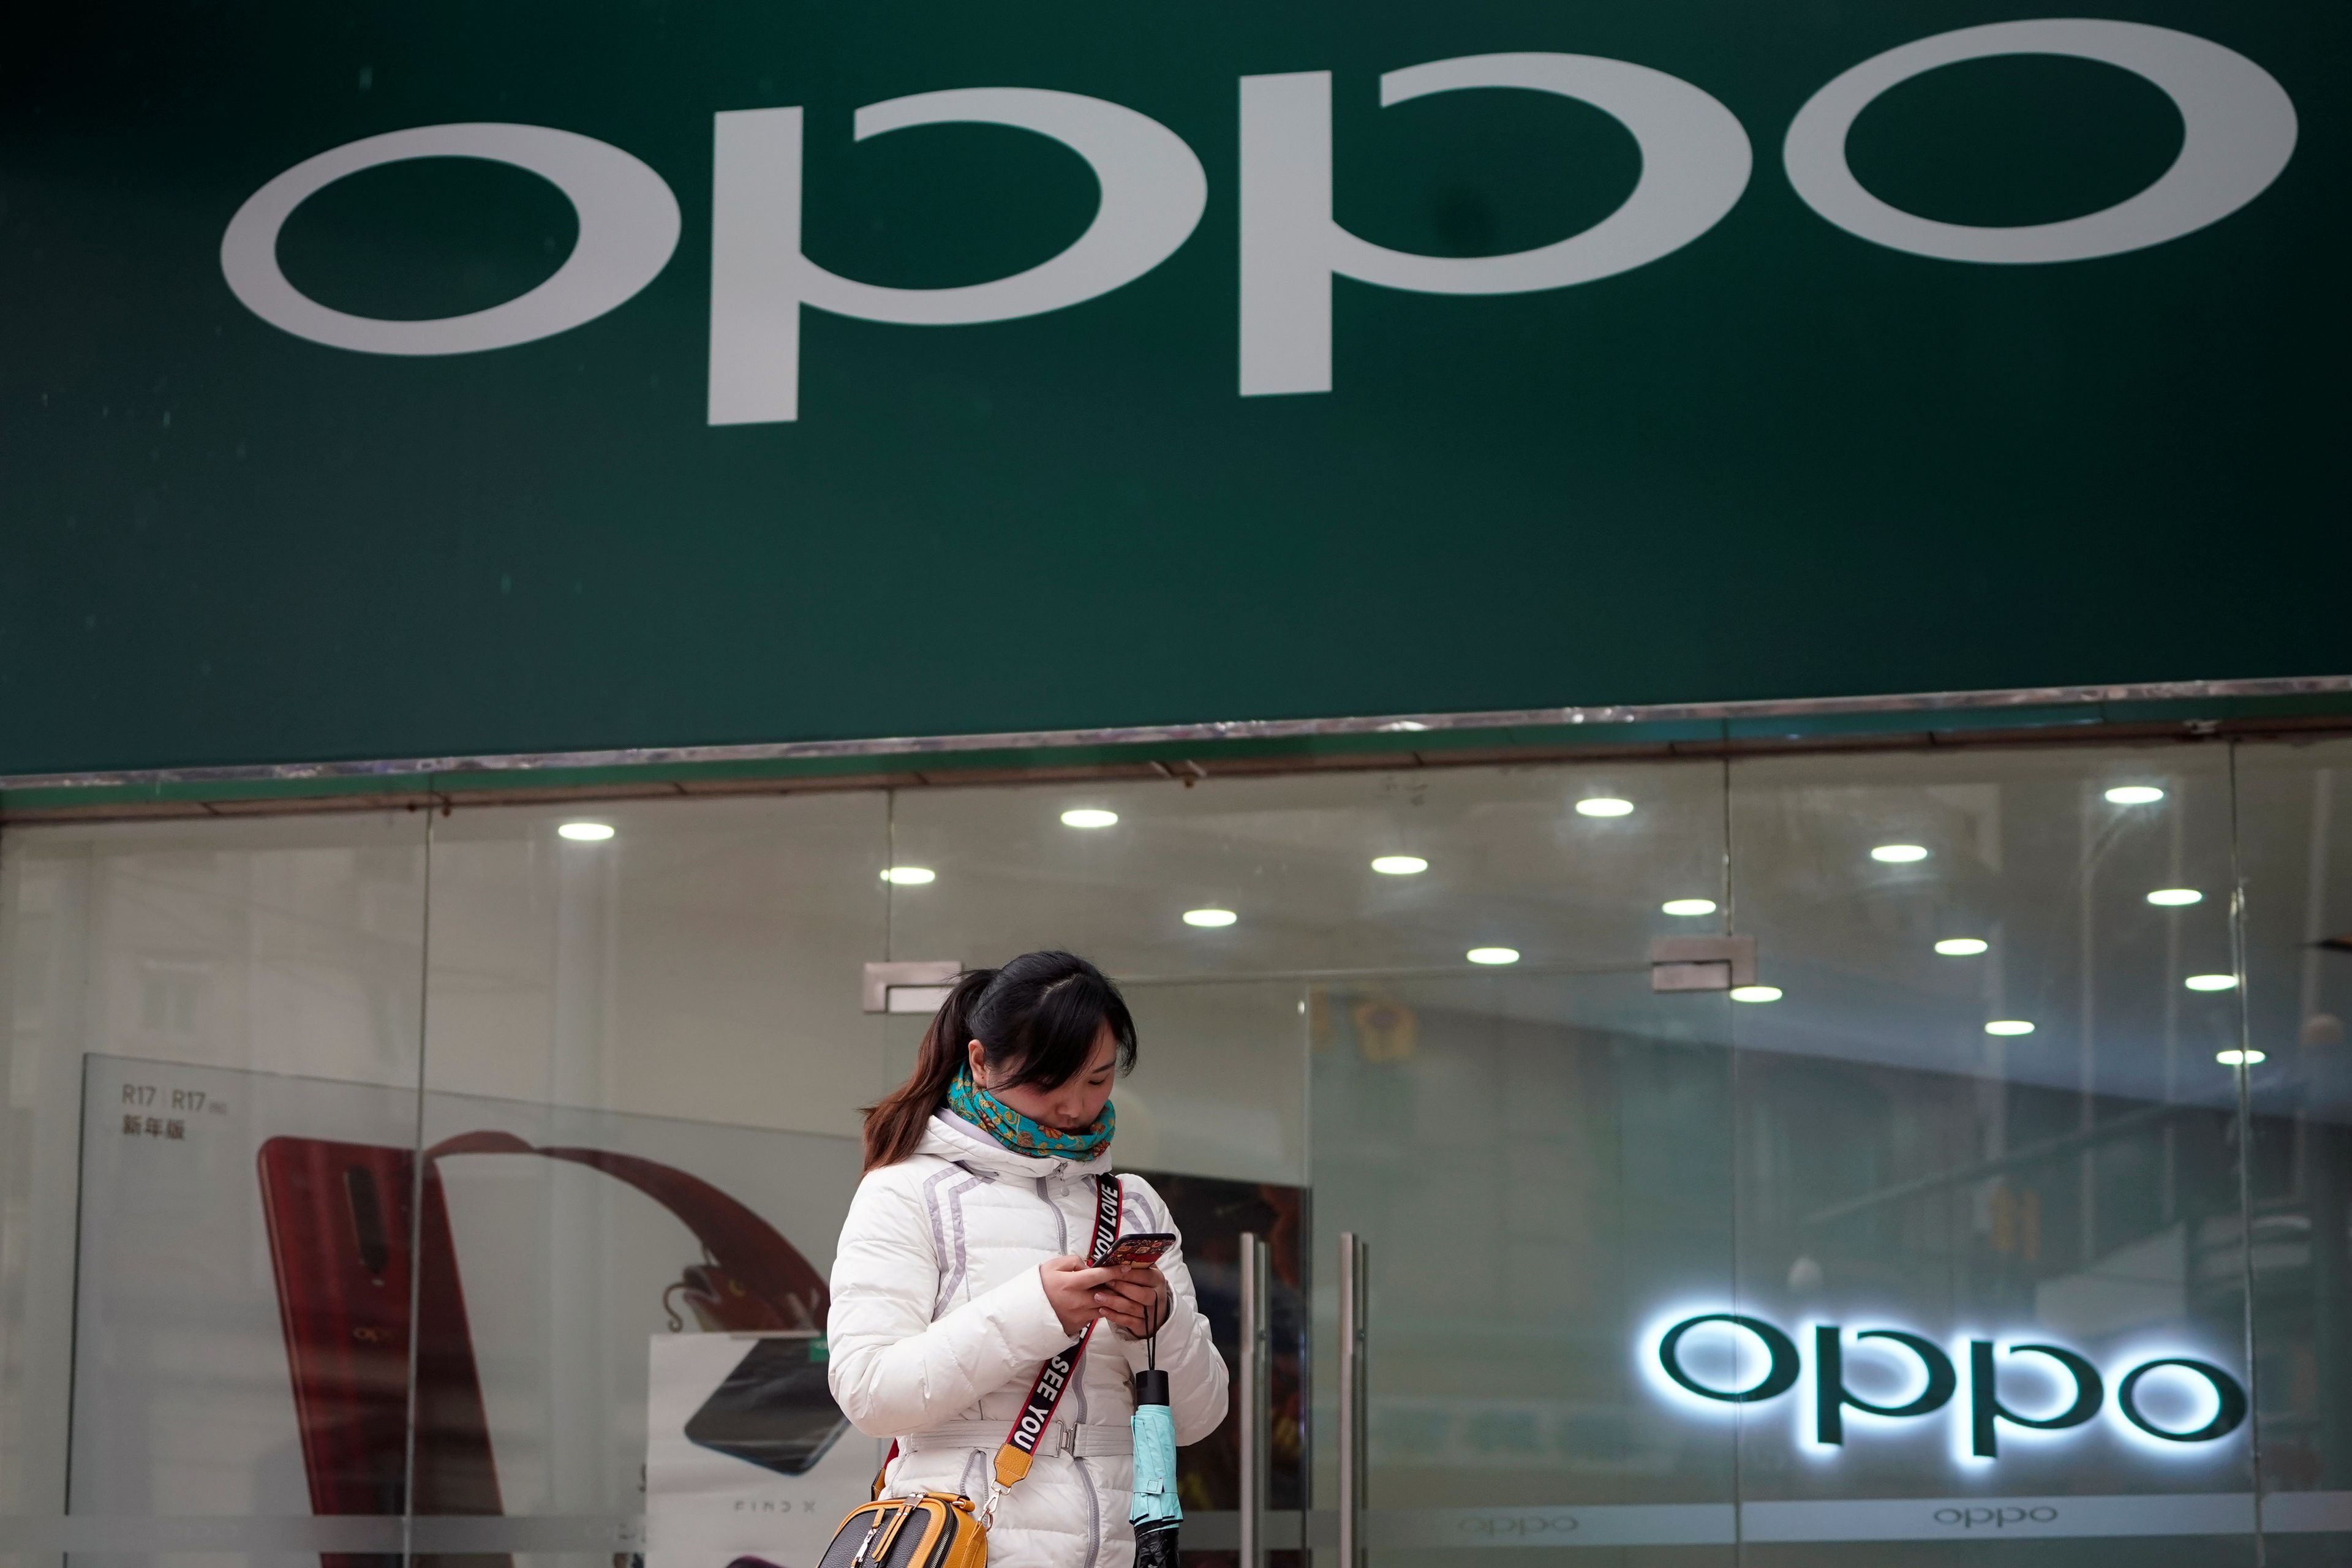 Una persona frente a una tienda con un logo de Oppo